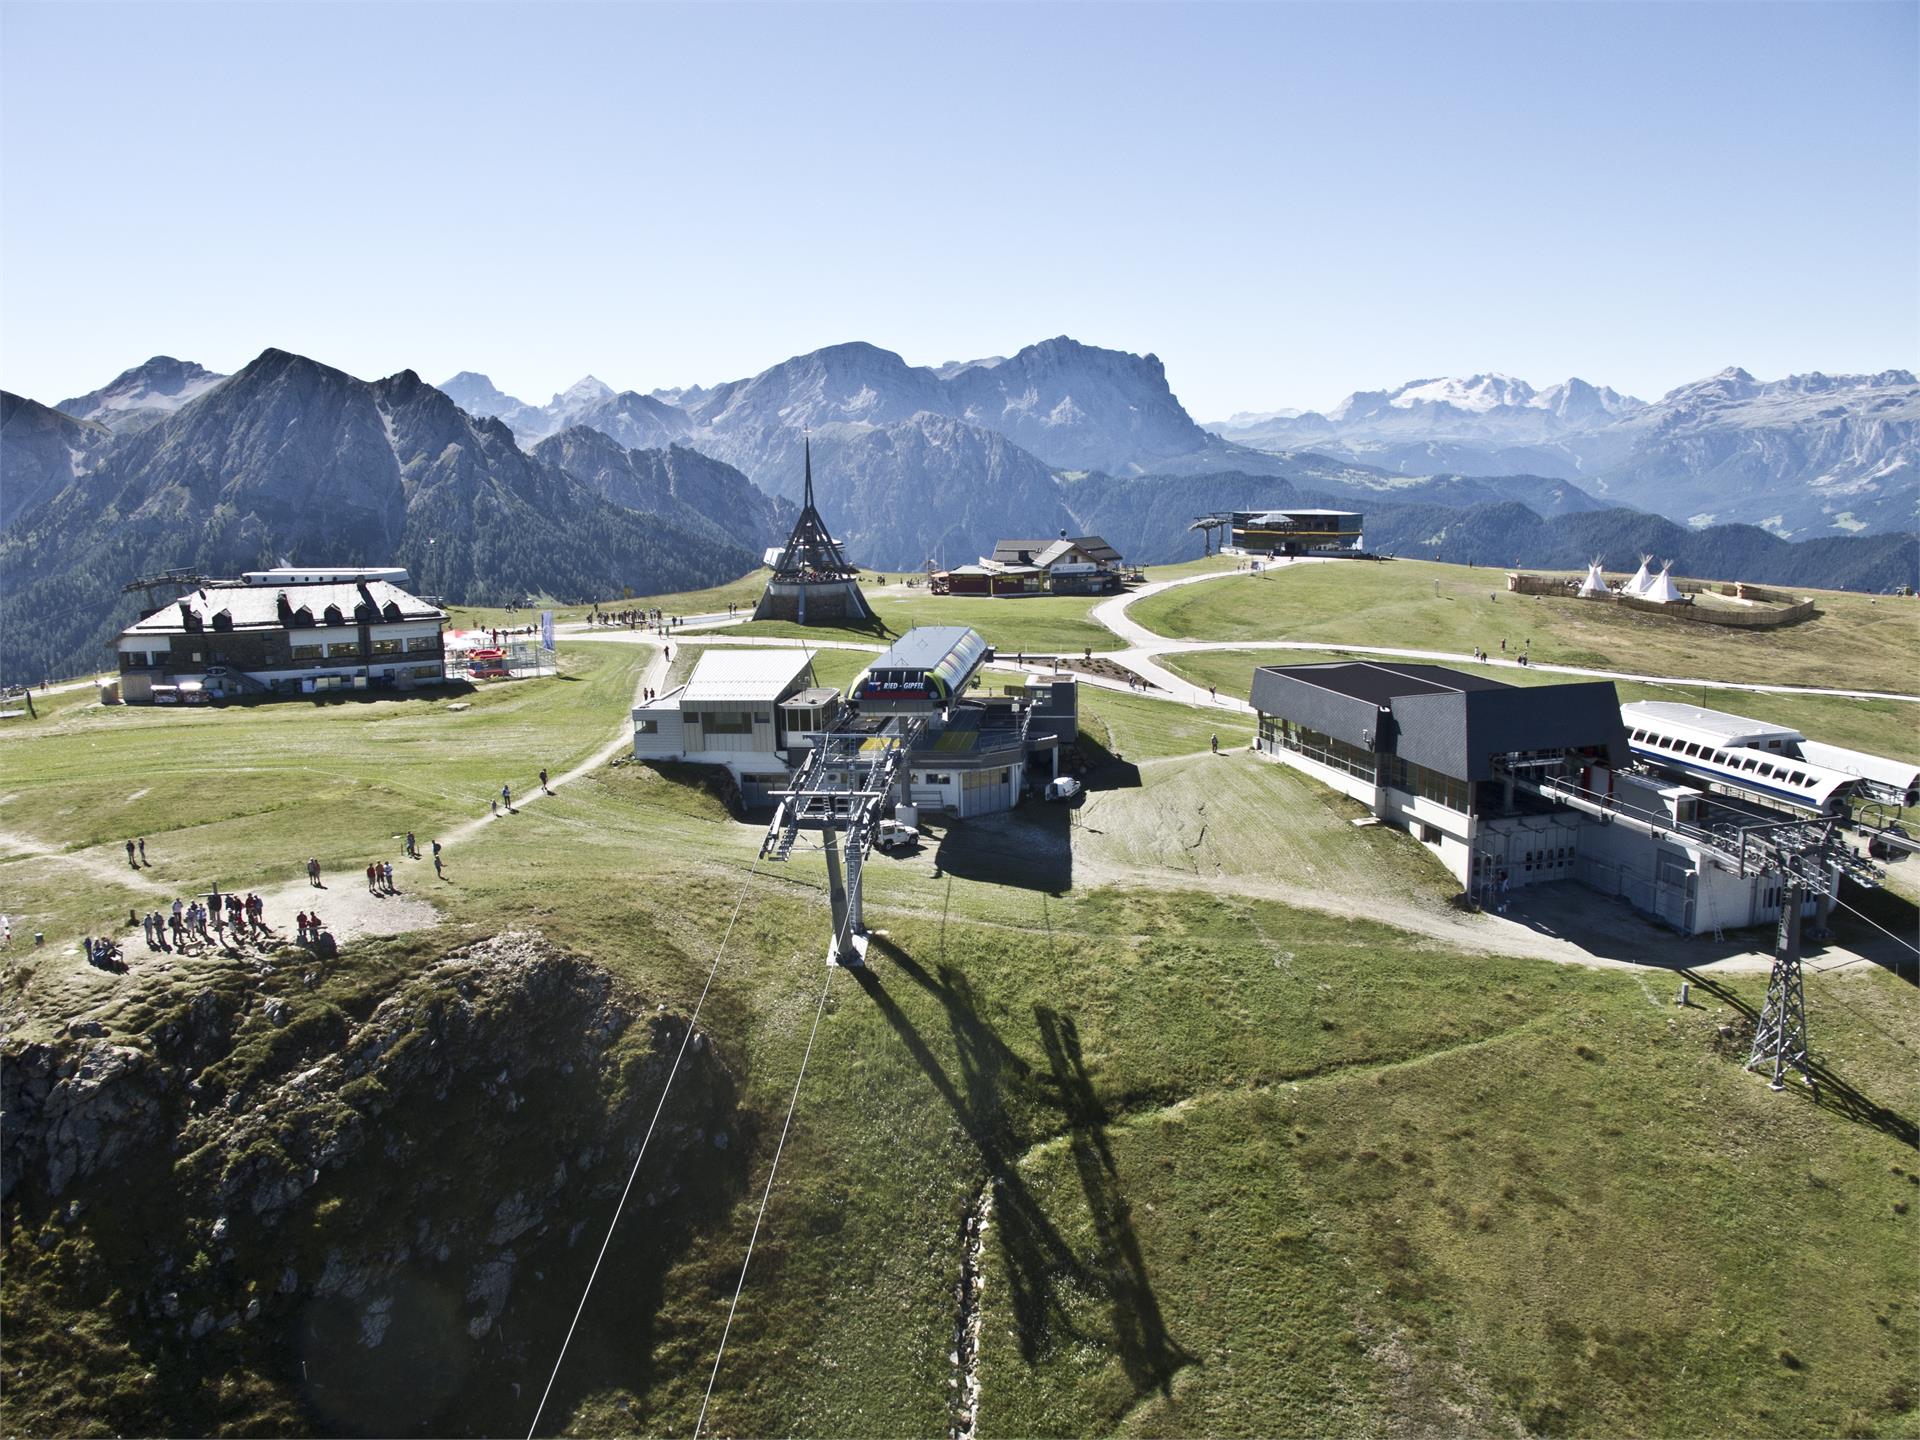 Alpine tour from Reischach/Riscone to the Kronplatz/Plan de Corones summit